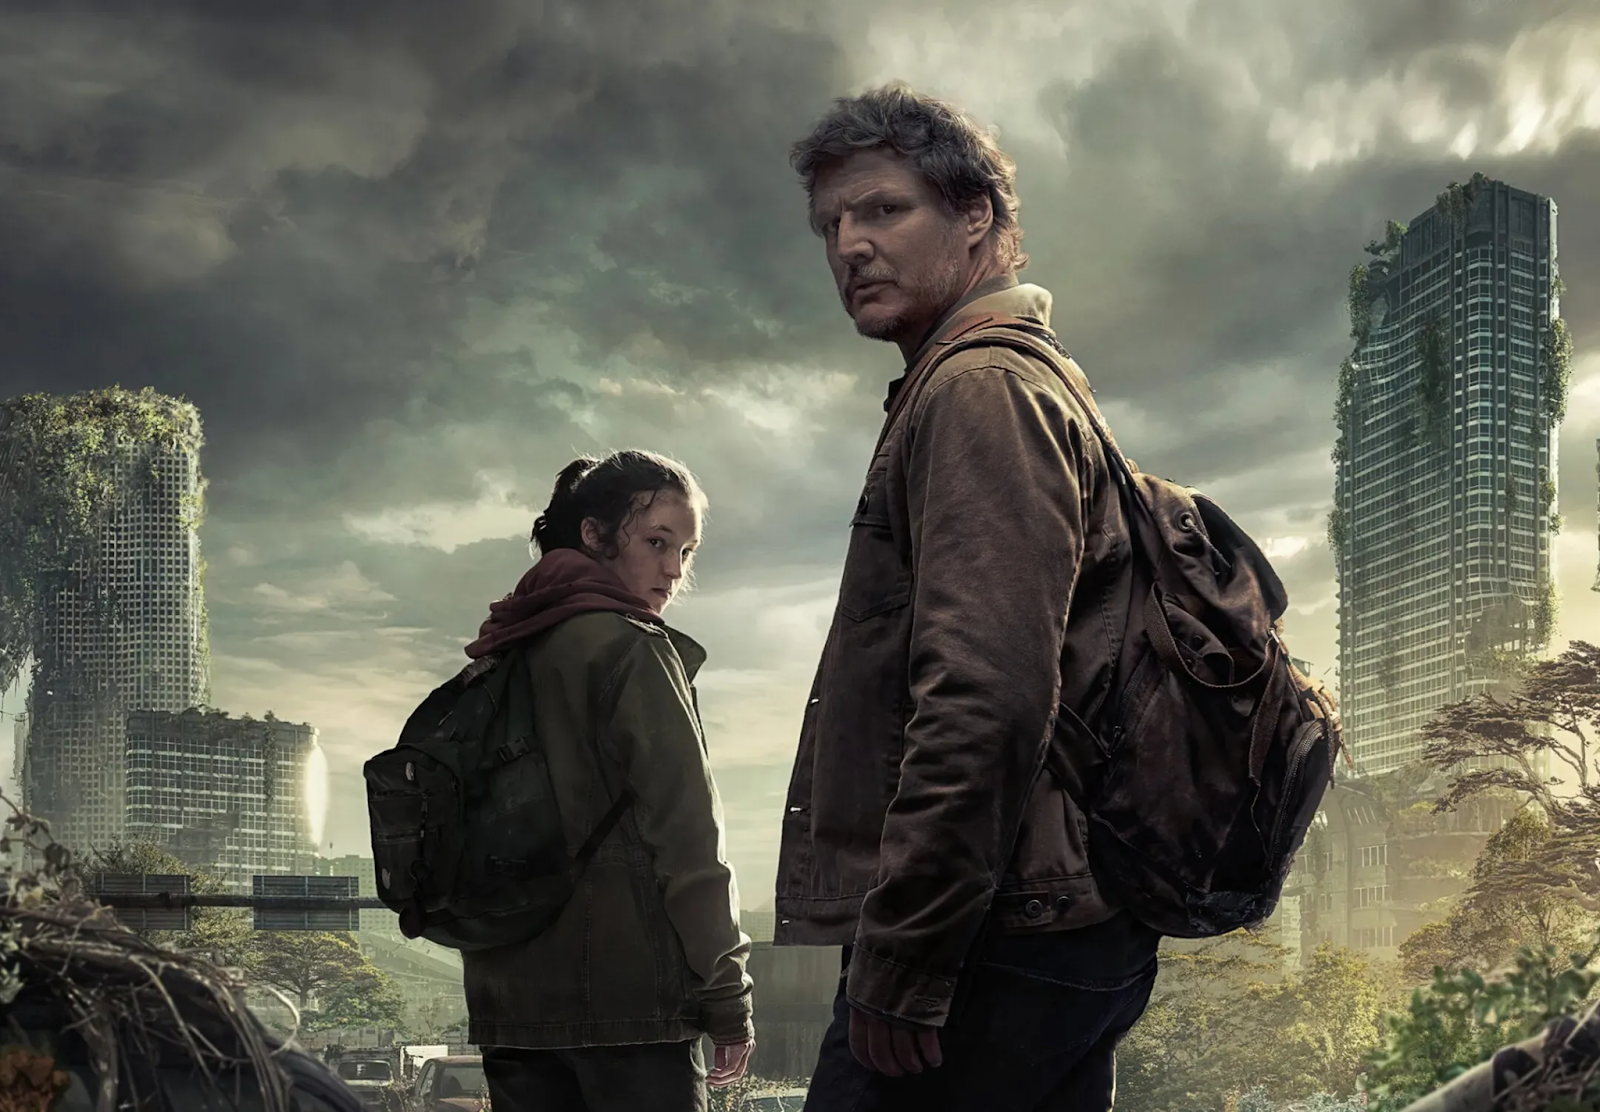 Joe (Pedro Pascal) y Ellie (Bella Ramsey) interpretando sus papeles en la serie The Last of Us. Llevan mochilas a sus espaldas la ropa ajada. De fondo se puede ver una ciudad destruida.